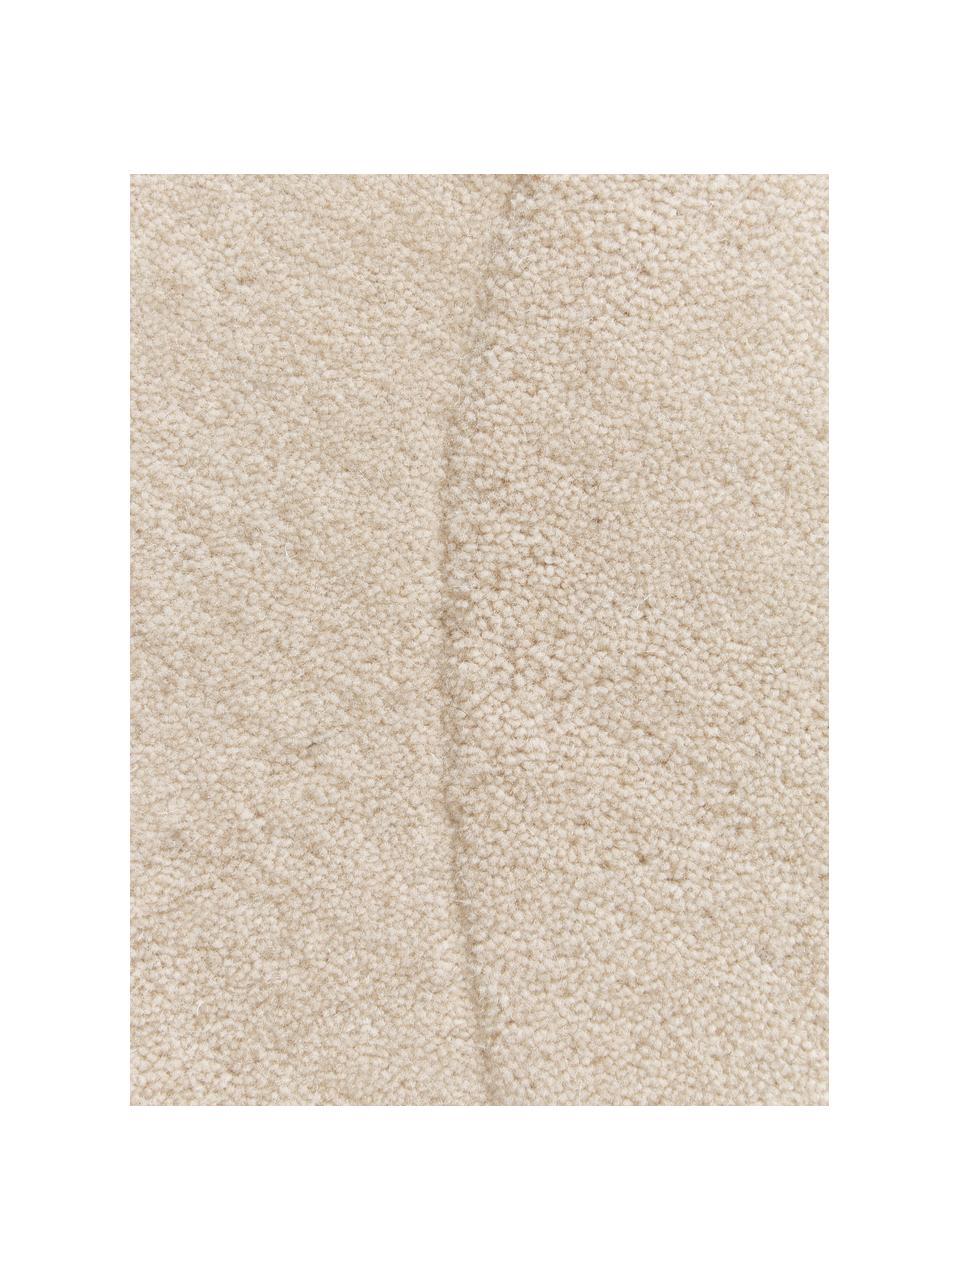 Tappeto in lana beige taftato a mano dalla forma organica Kadey, Retro: 100% cotone Nel caso dei , Beige, Larg. 120 x Lung. 180 cm (taglia S)